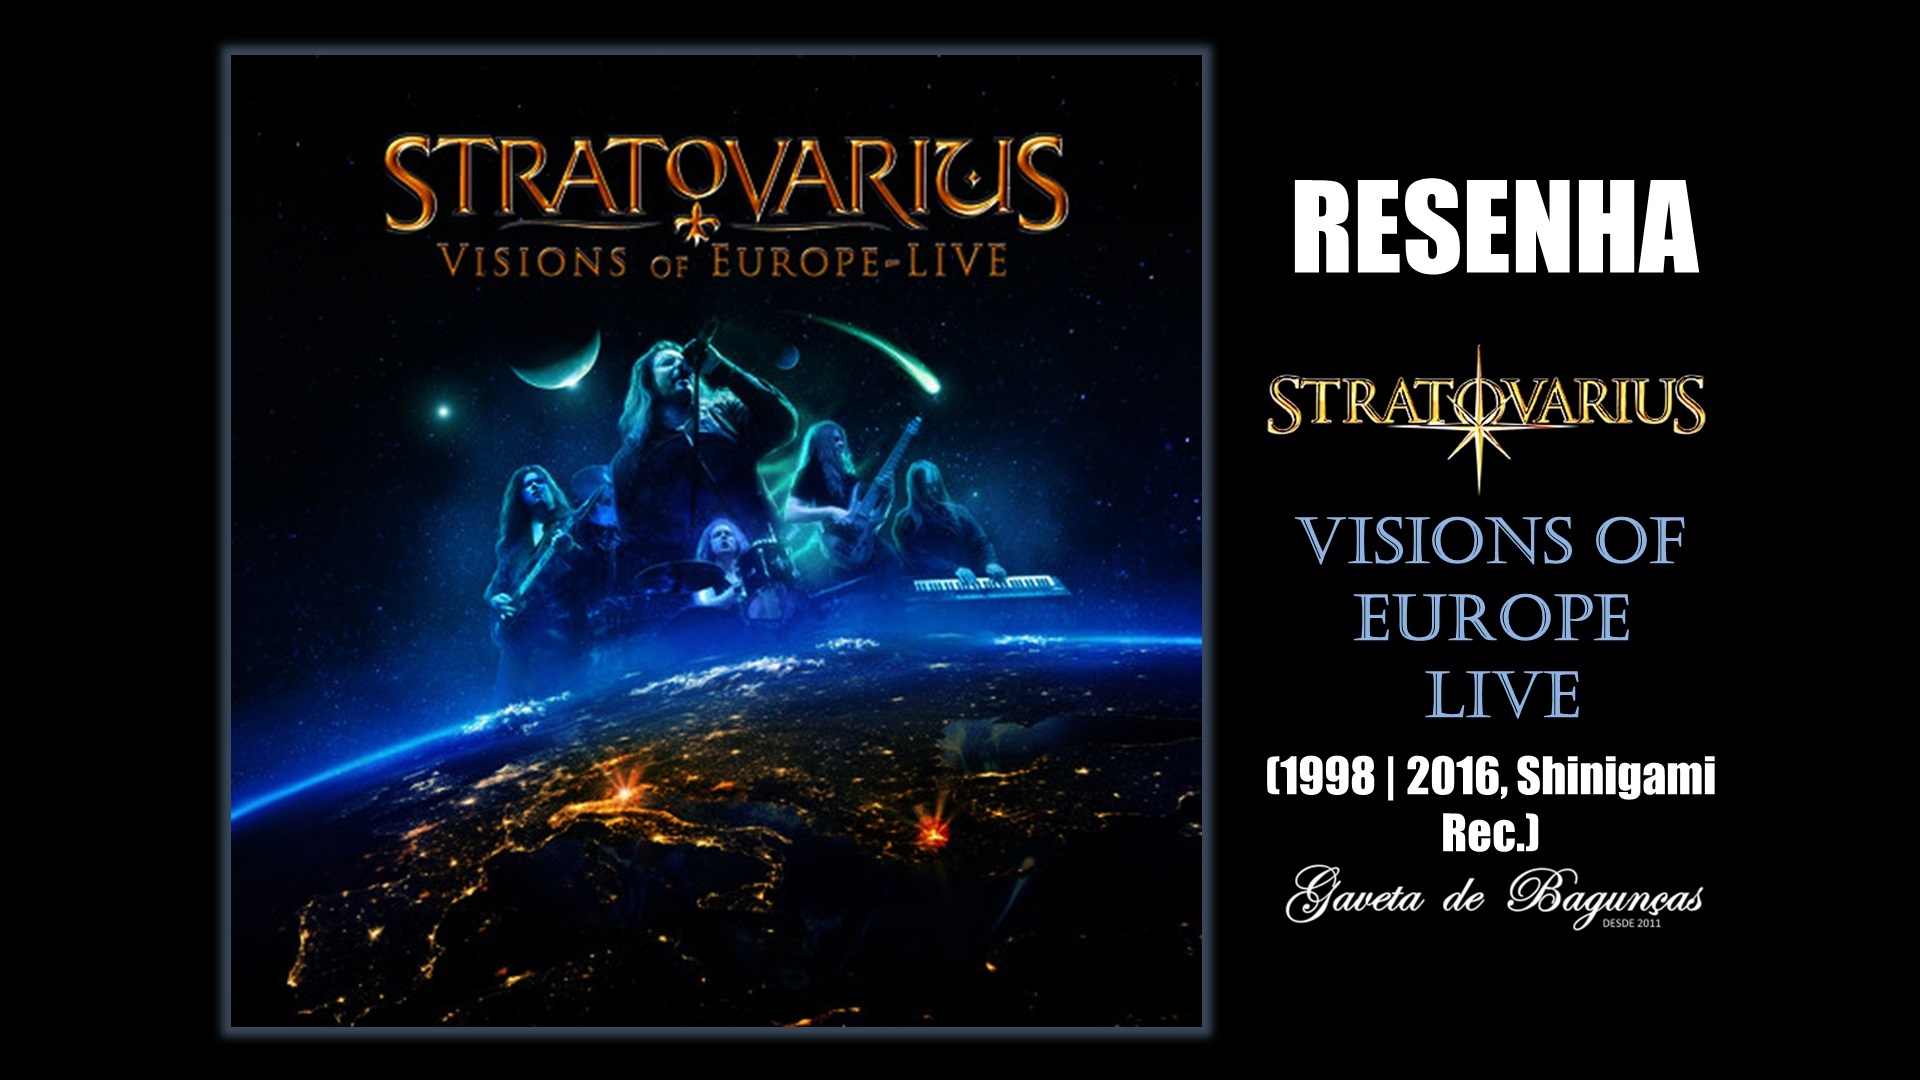 Stratovarius - Visions of Europe Live Resenha review relançamento reissue